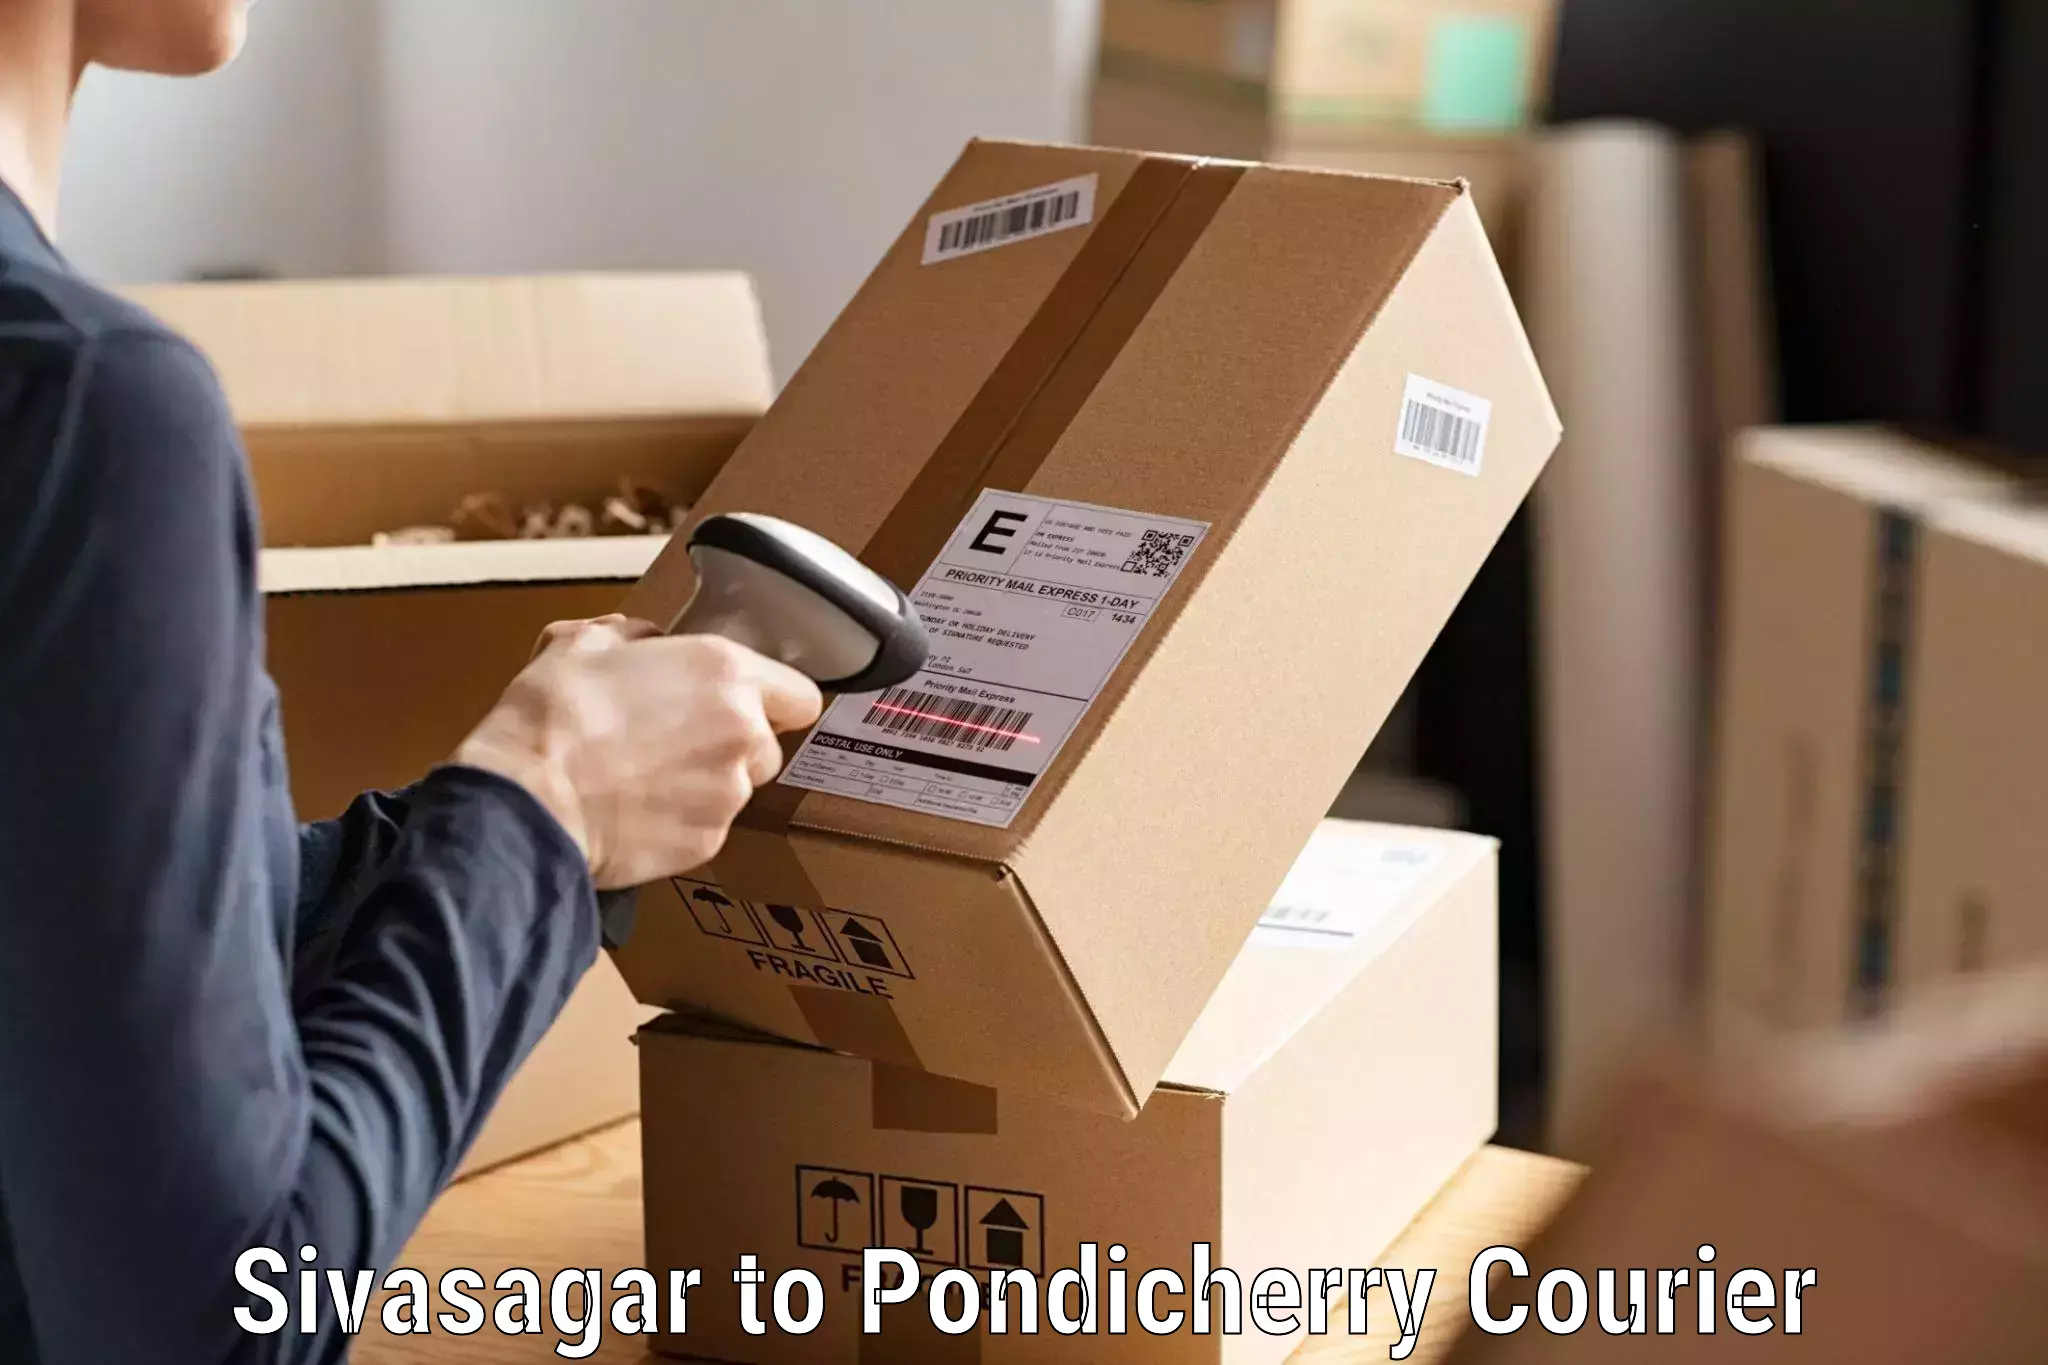 24/7 courier service Sivasagar to Pondicherry